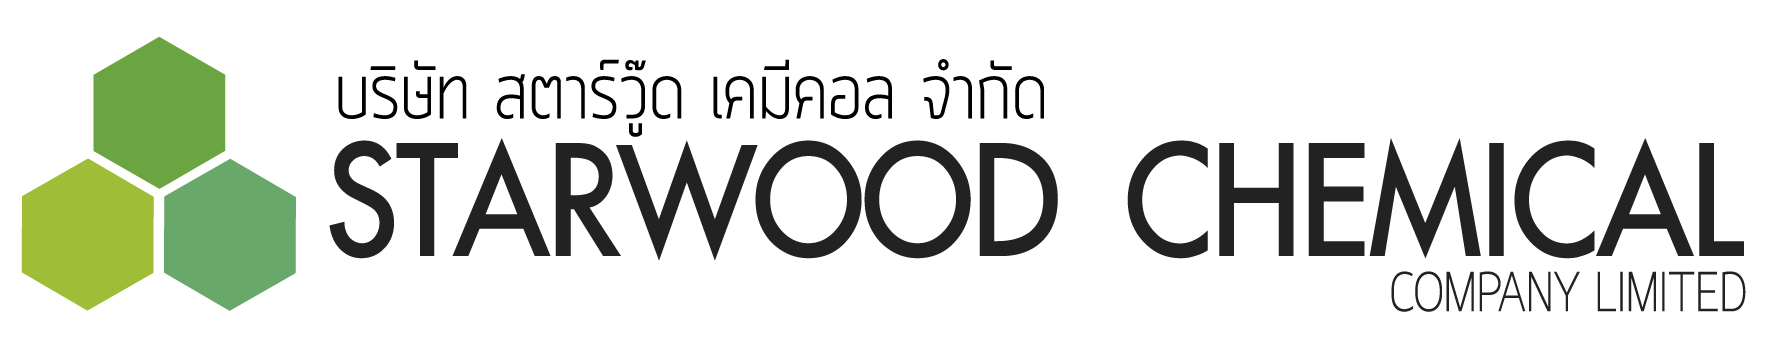 Starwood Chemical Co., Ltd.